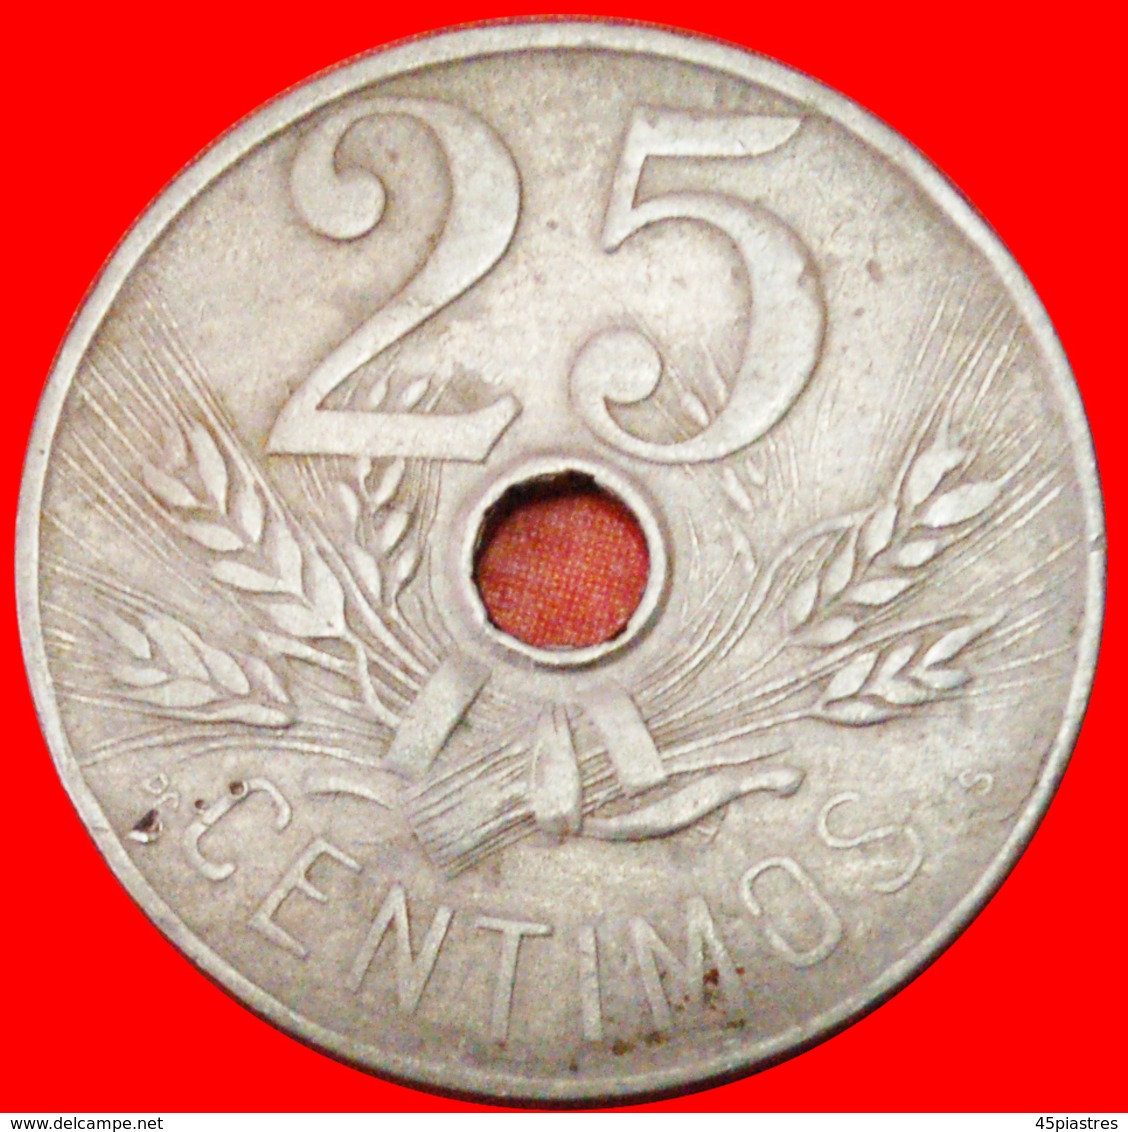 # HAMMER: SPAIN ★ 25 CENTIMOS 1927! LOW START ★ NO RESERVE! Alfonso XIII (1886-1931) - Ensayos & Reacuñaciones